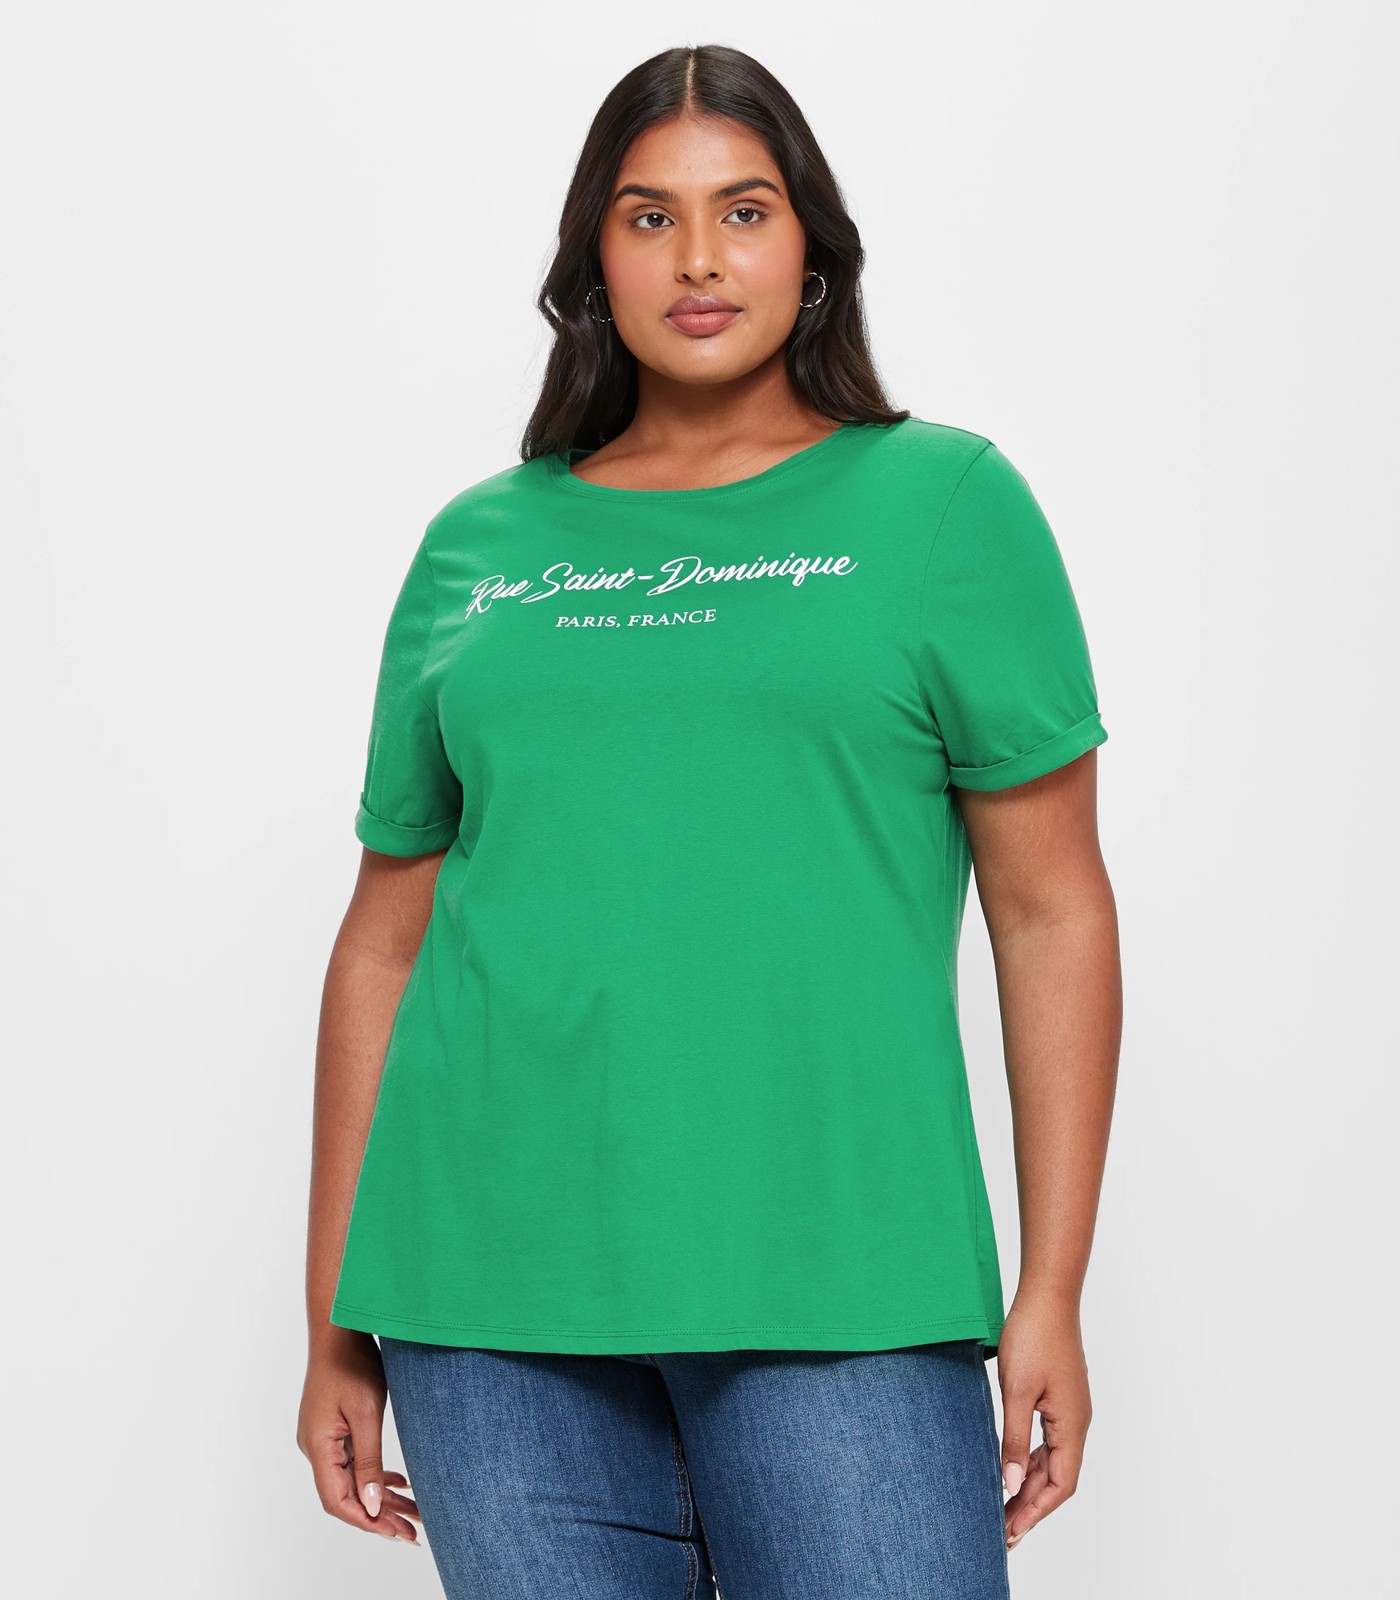 Plus Size Graphic T-Shirt - Grass Green Paris